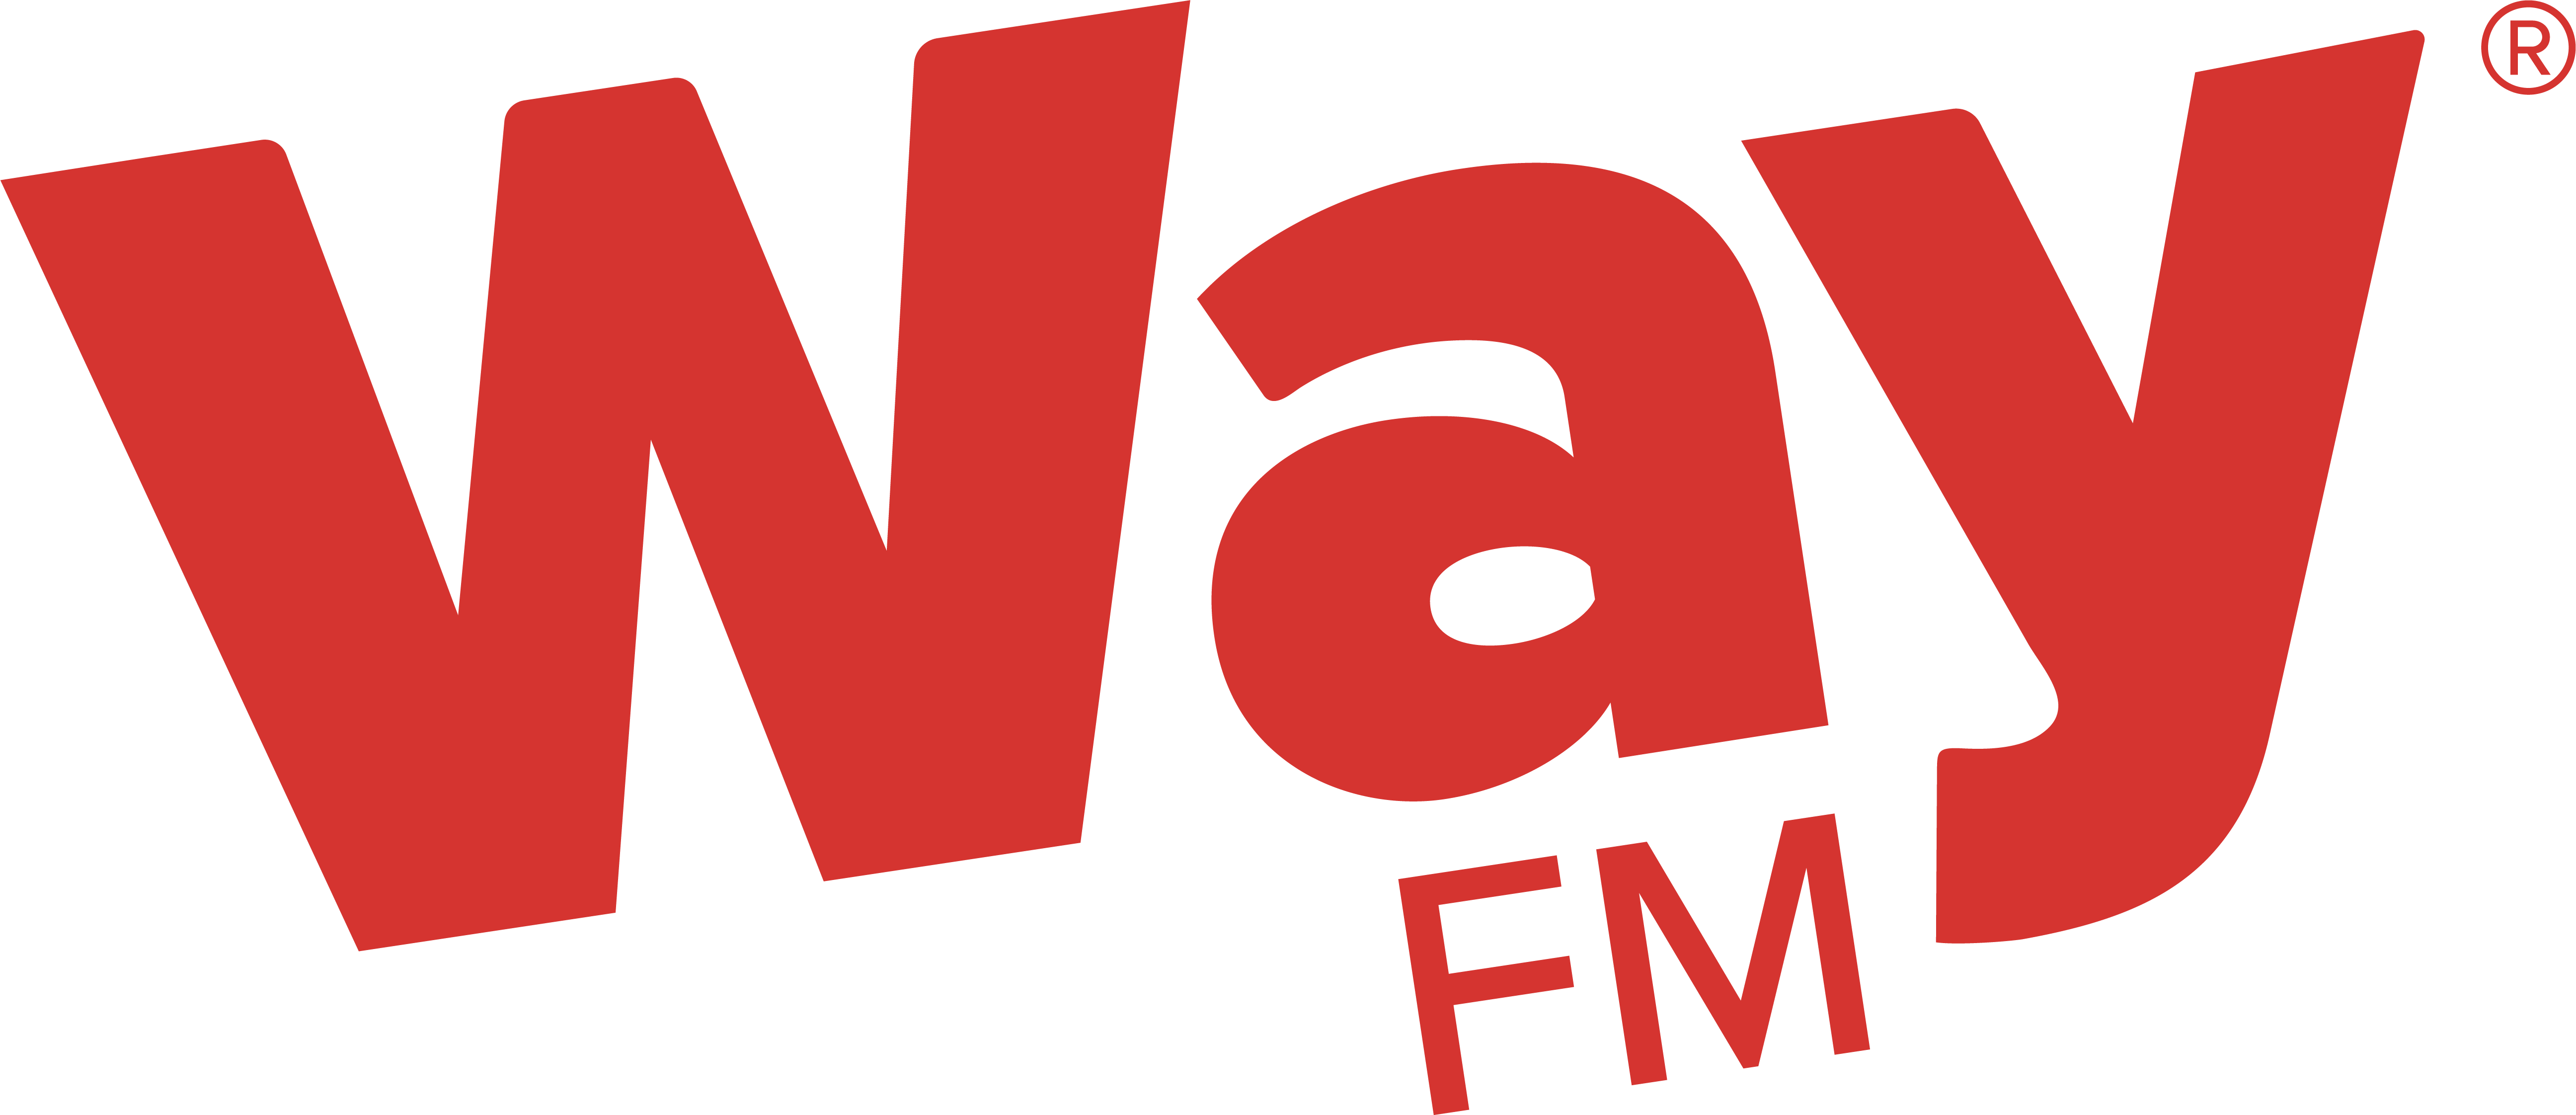 WAYFM logo